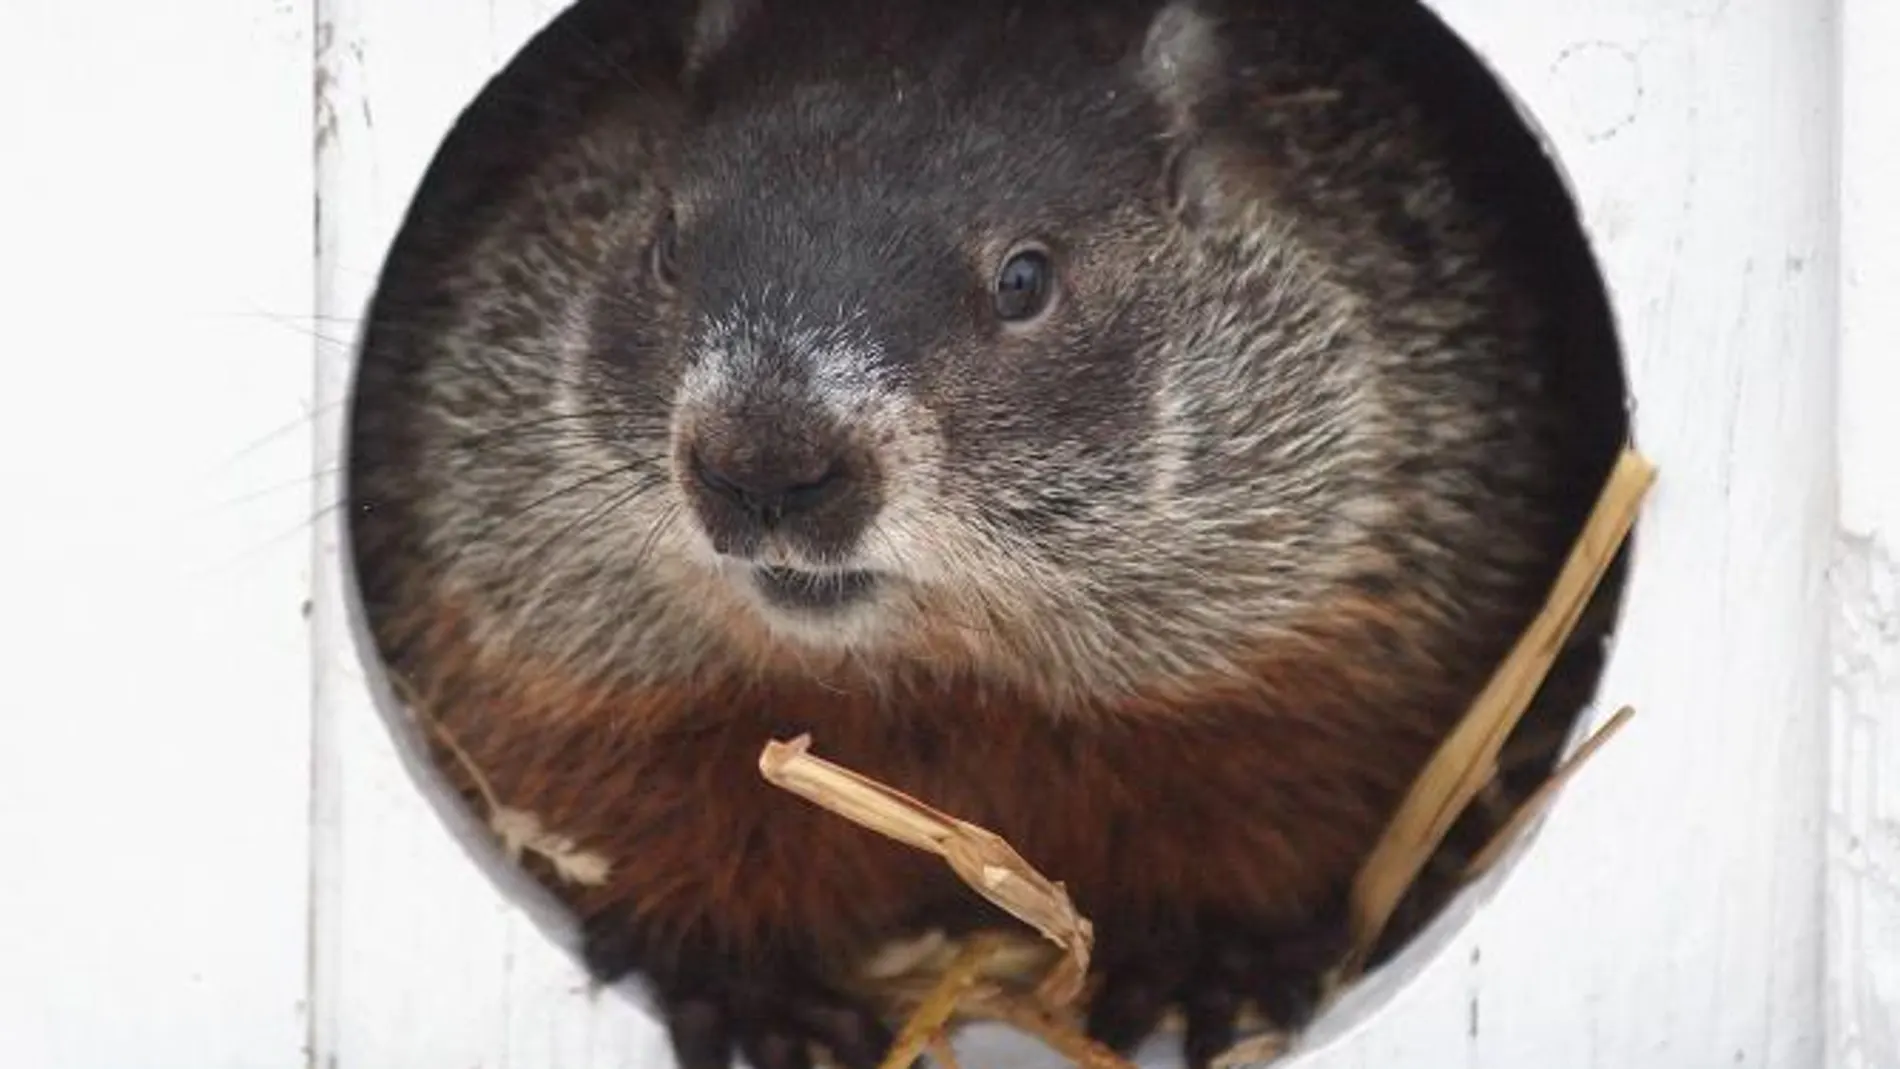 El invierno durará seis semanas más según la marmota Punxsutawney Phil